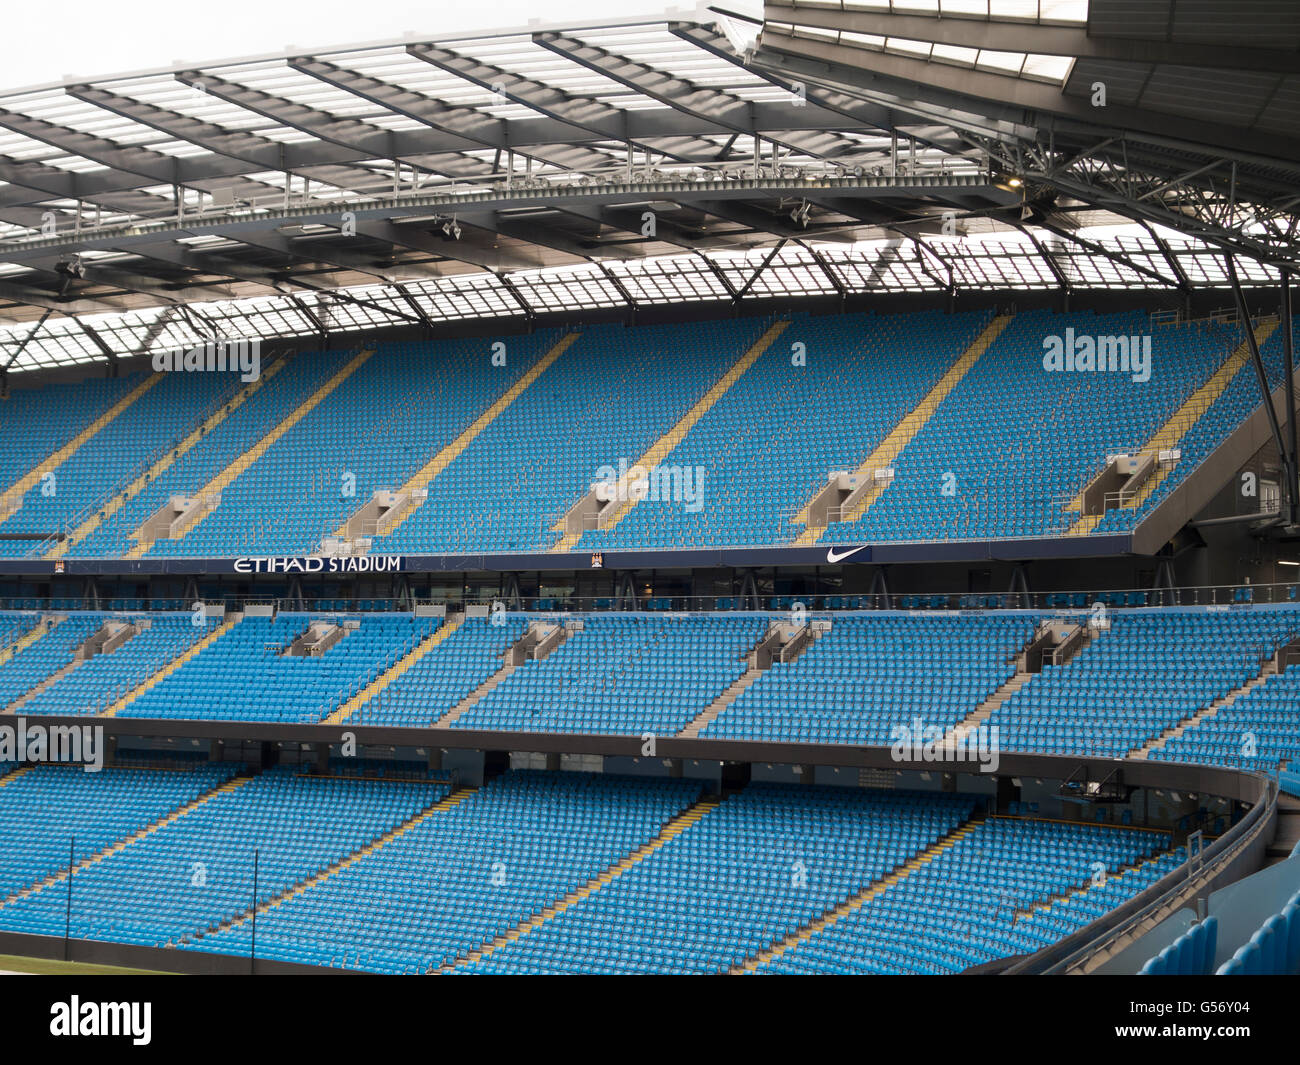 Posti a sedere all'interno Etihad Stadium Manchester City Football Club Regno Unito Foto Stock